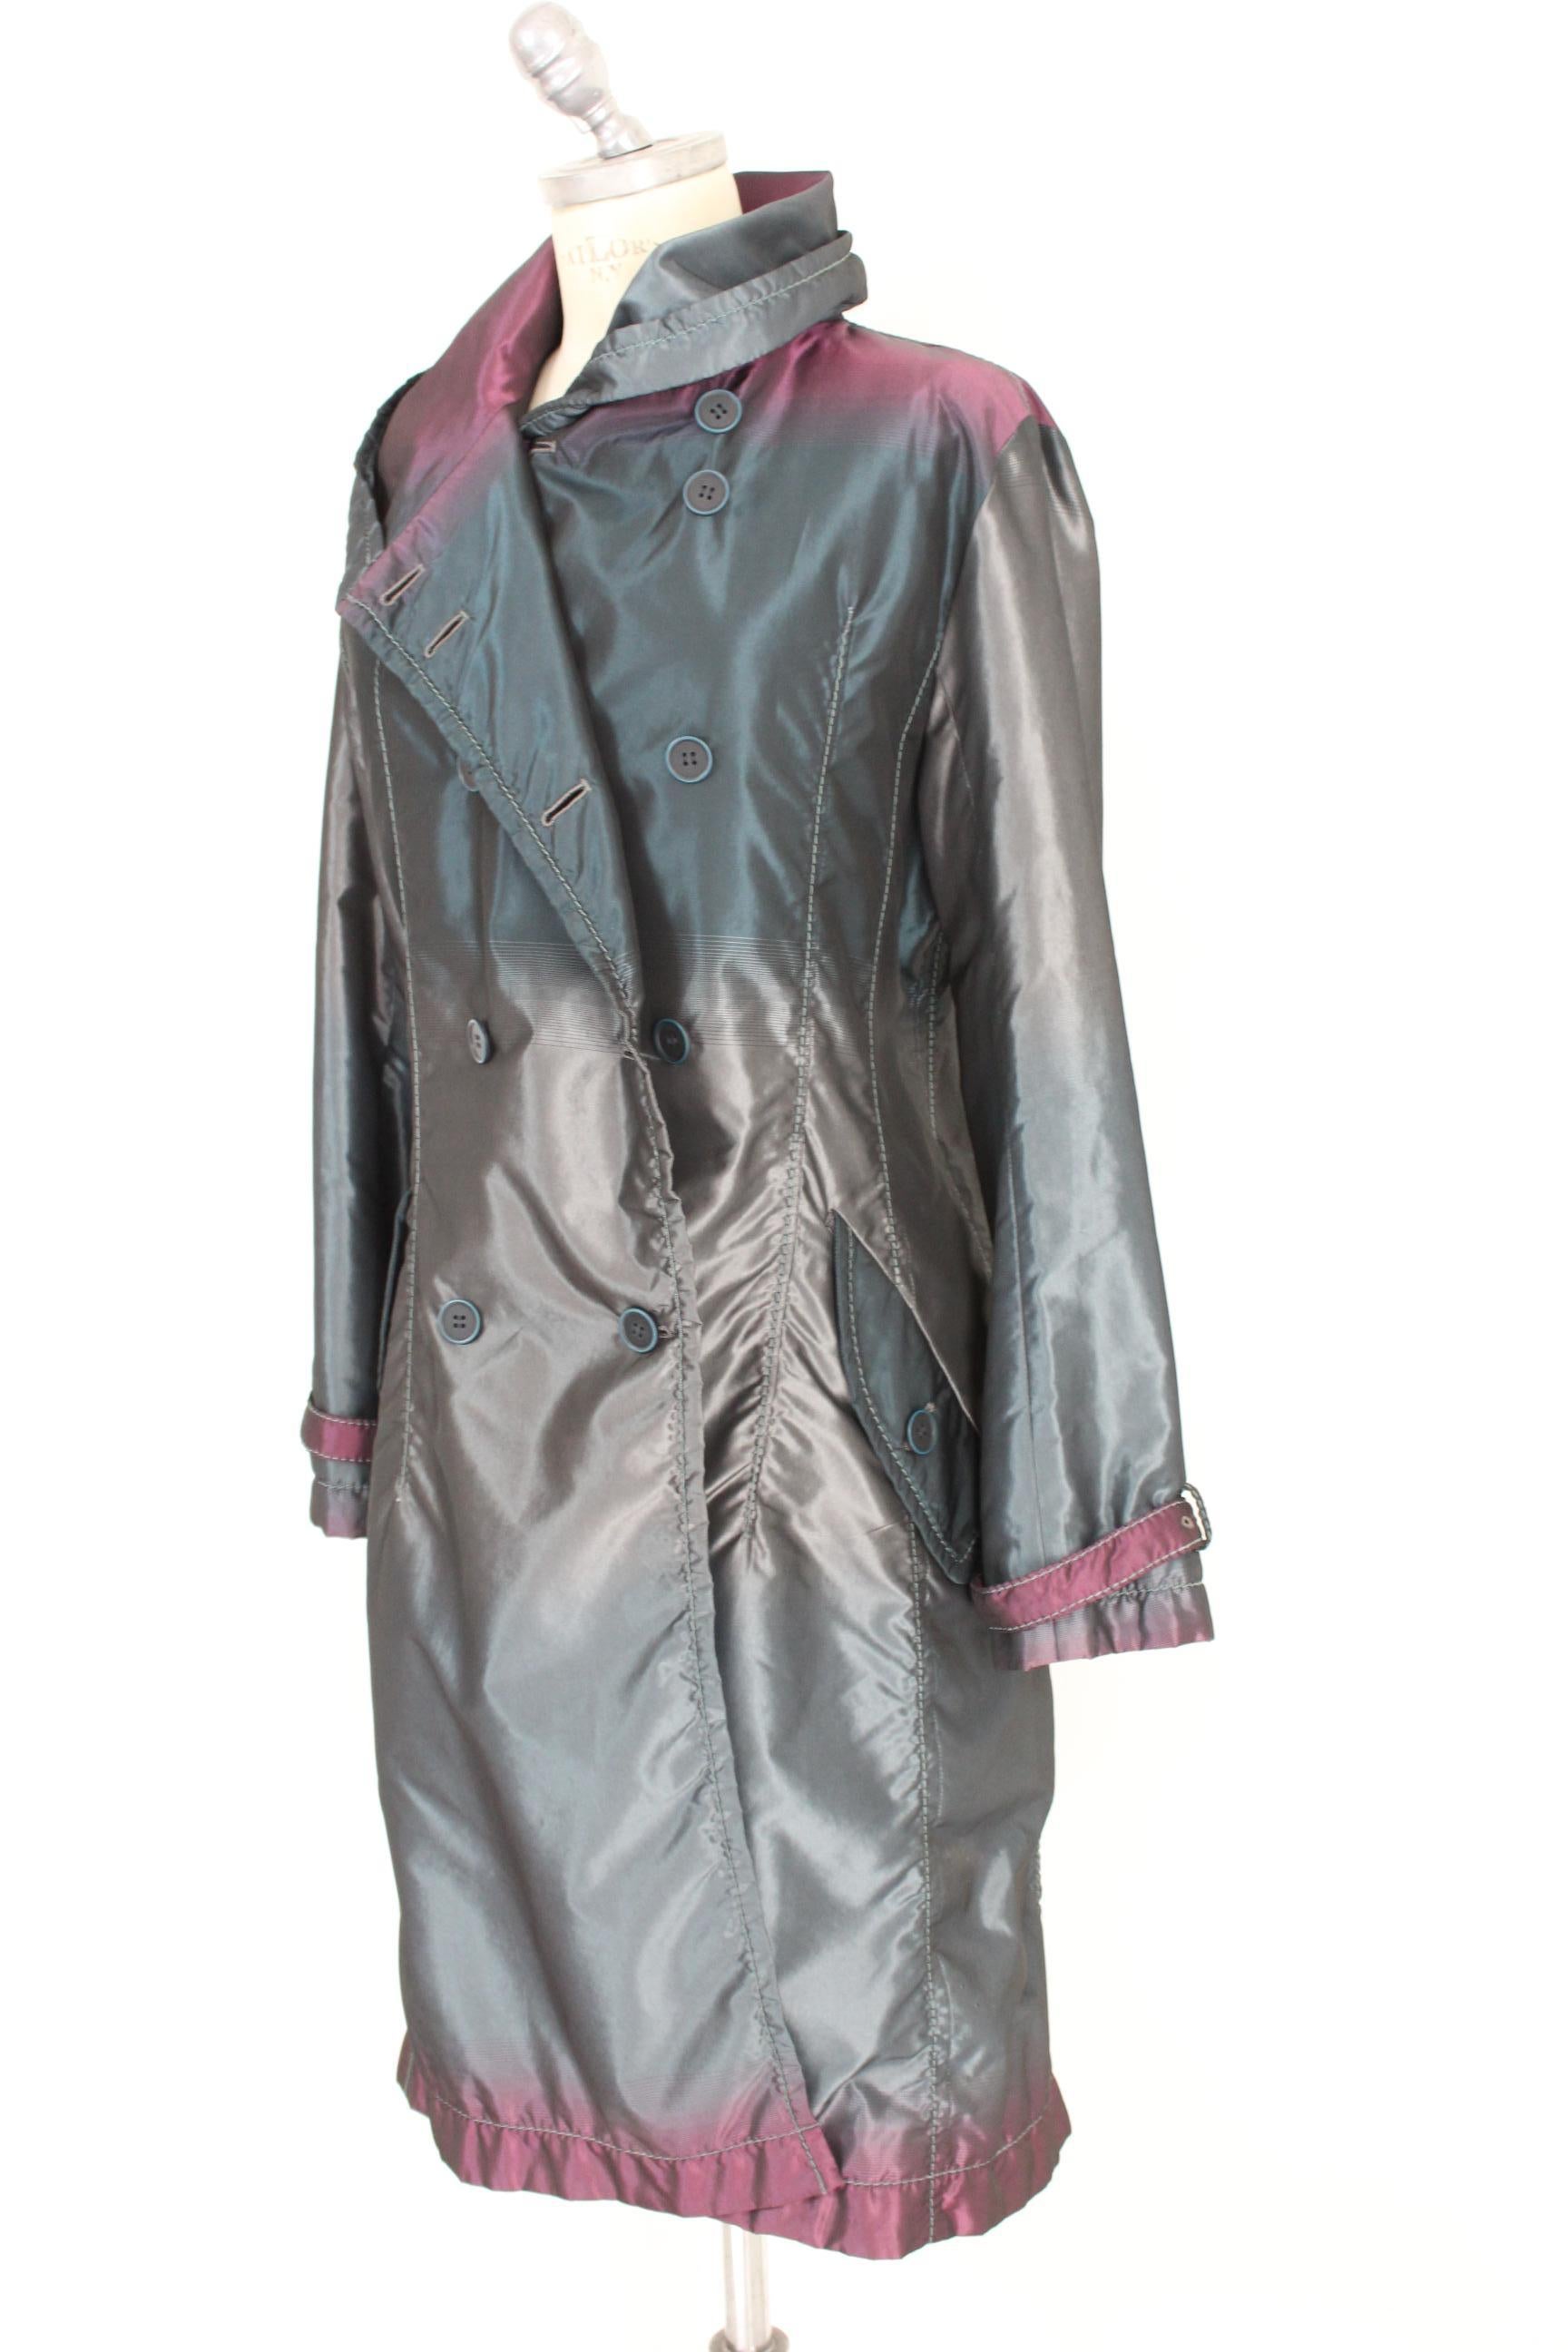 Women's Issey Miyake Gray Blue Silk Trench Coat 1990s